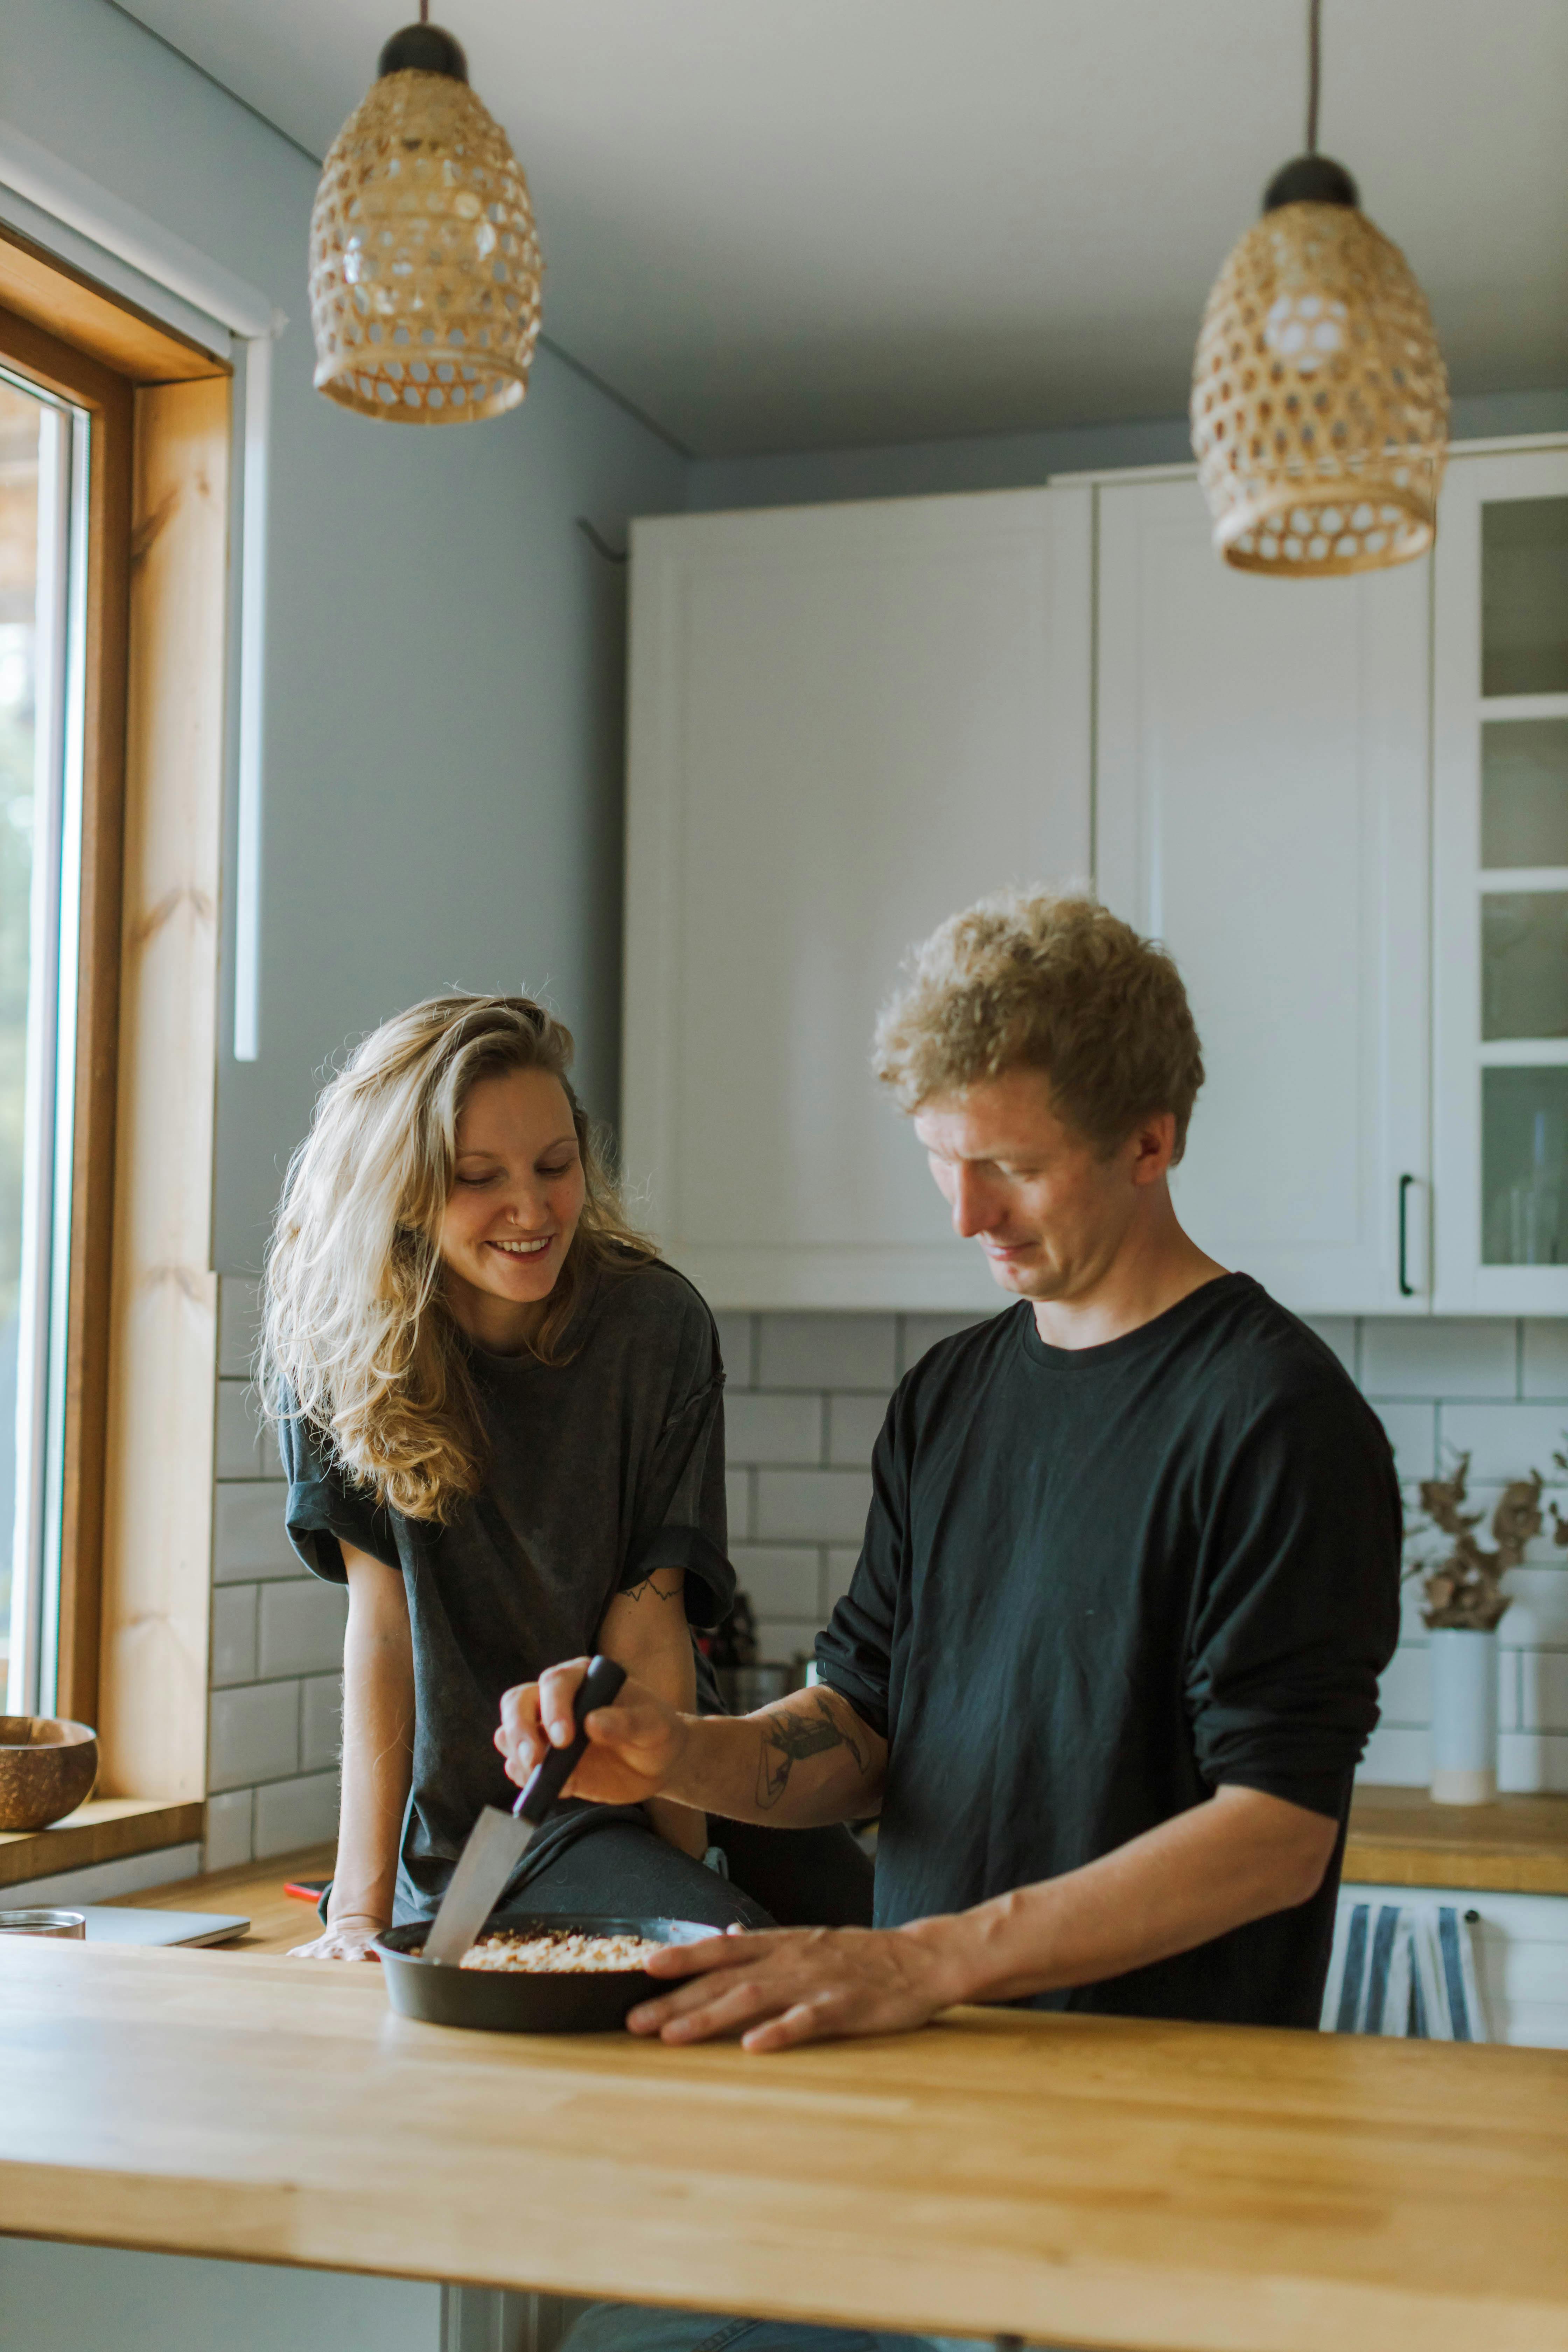 Un homme et une femme qui cuisinent ensemble dans la cuisine | Source : Pexels